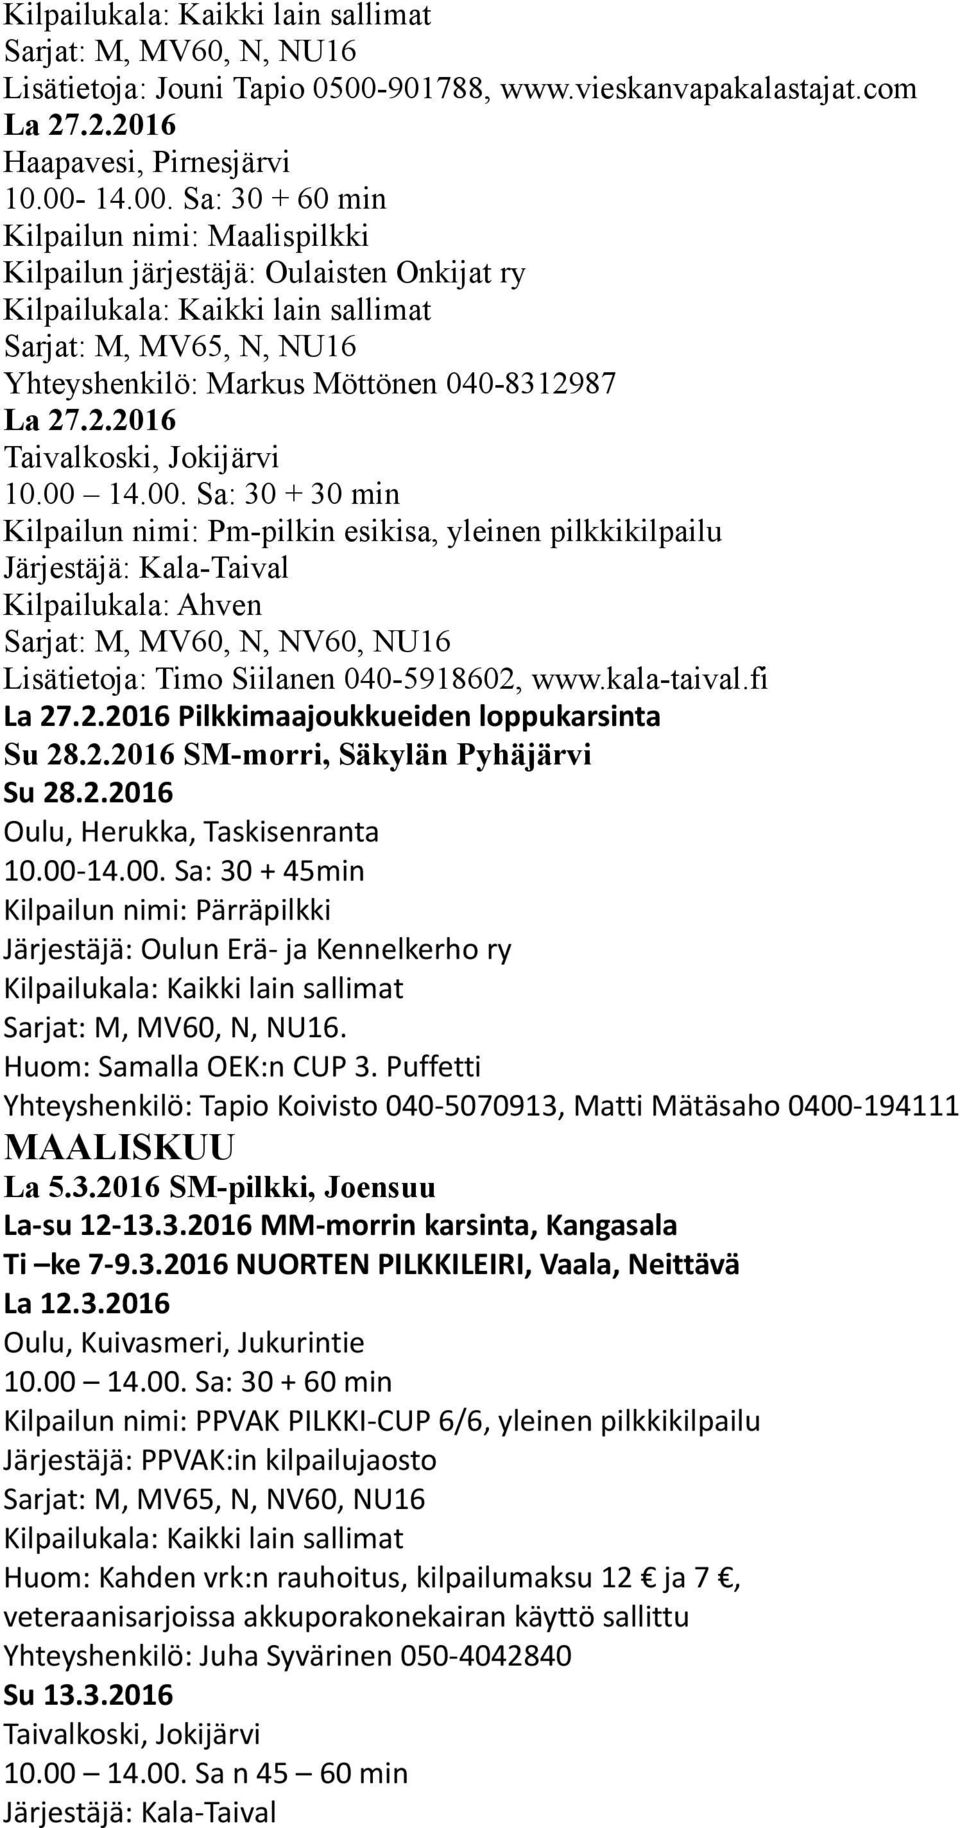 14.00. Sa: 30 + 60 min Kilpailun nimi: Maalispilkki Kilpailun järjestäjä: Oulaisten Onkijat ry Sarjat: M, MV65, N, NU16 Yhteyshenkilö: Markus Möttönen 040-8312987 La 27.2.2016 Taivalkoski, Jokijärvi 10.